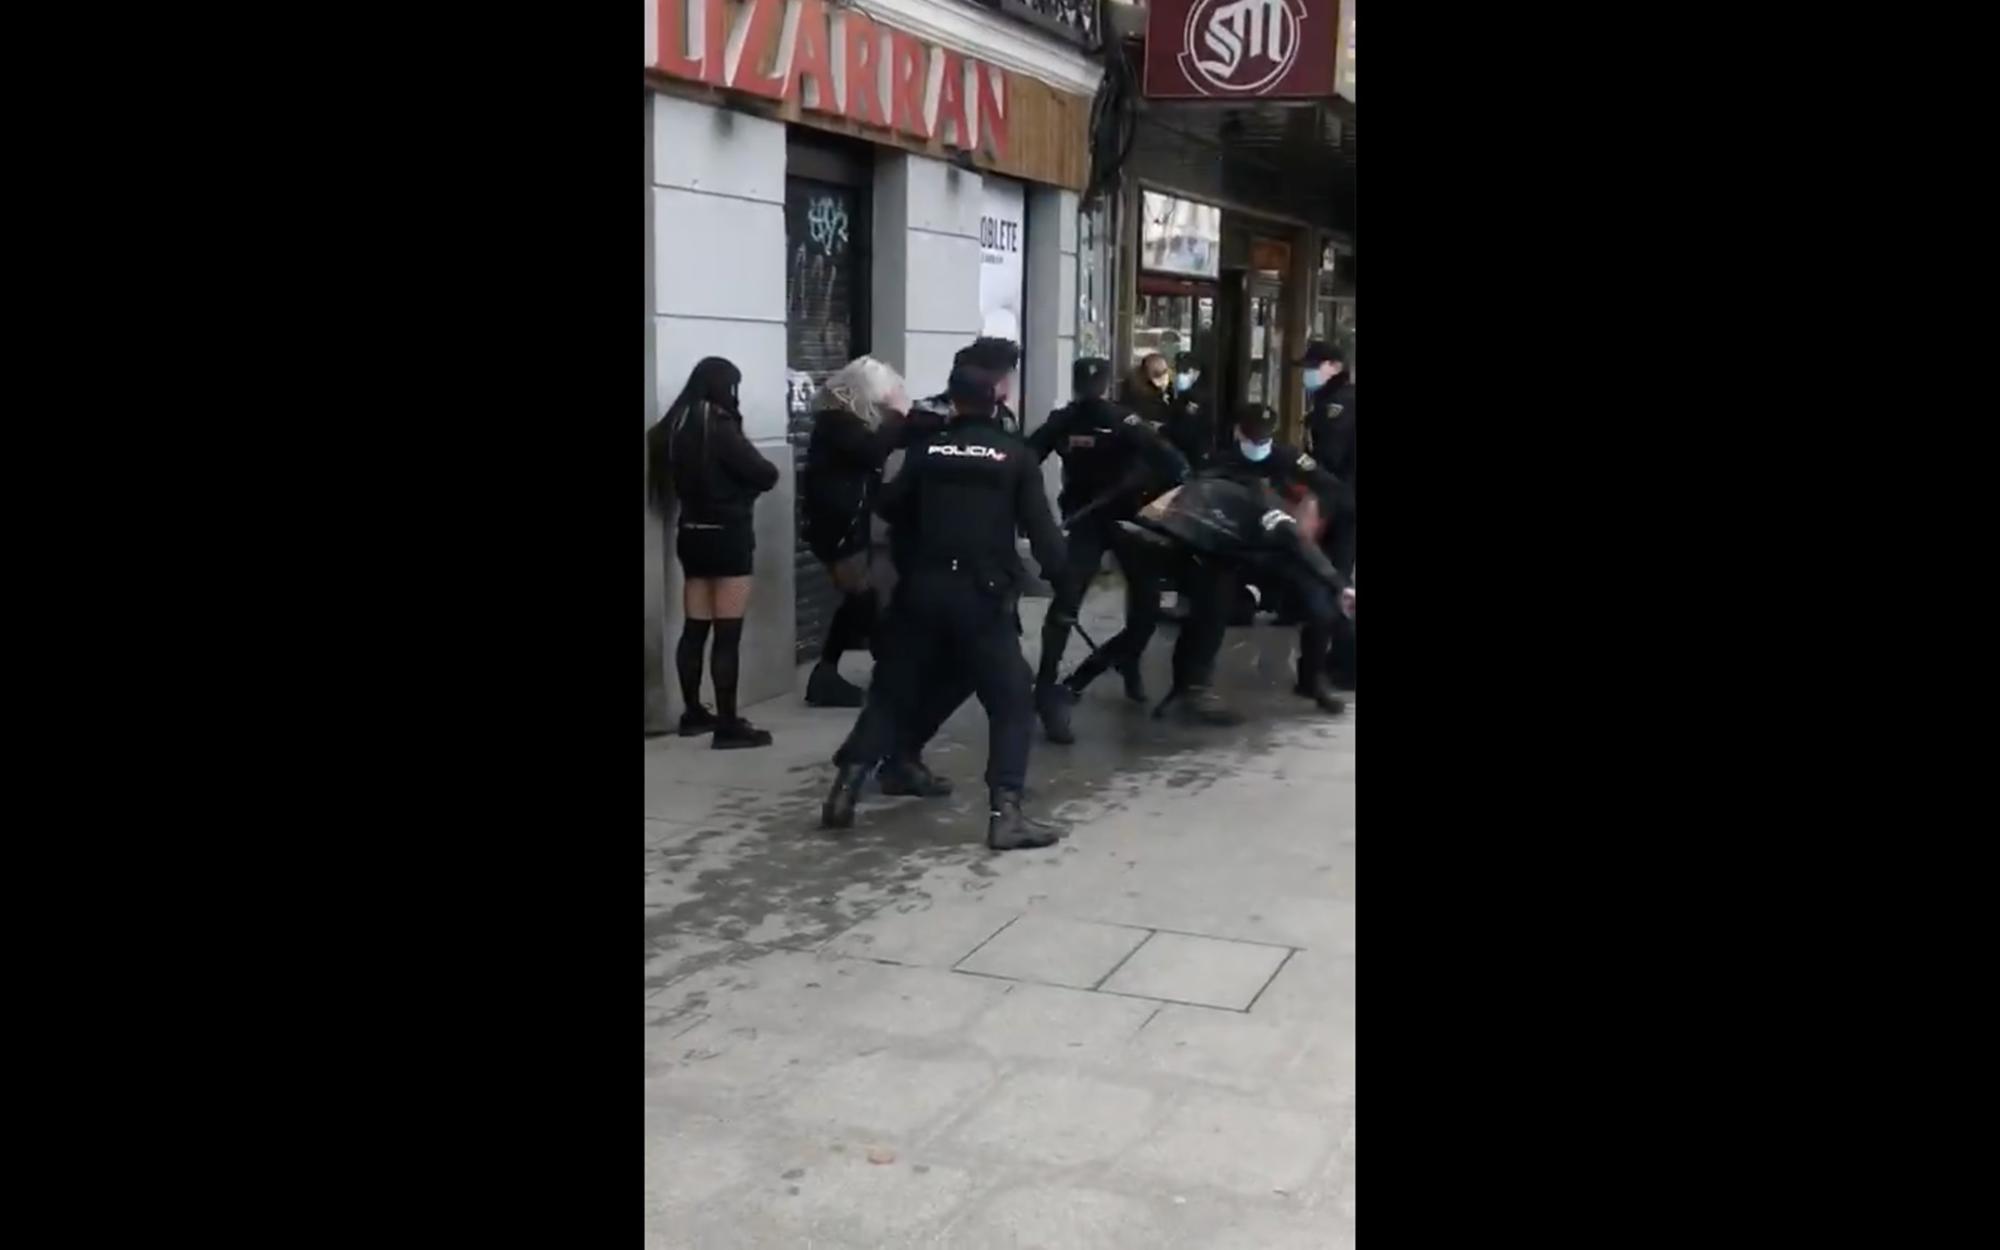 Agresion policial Atocha